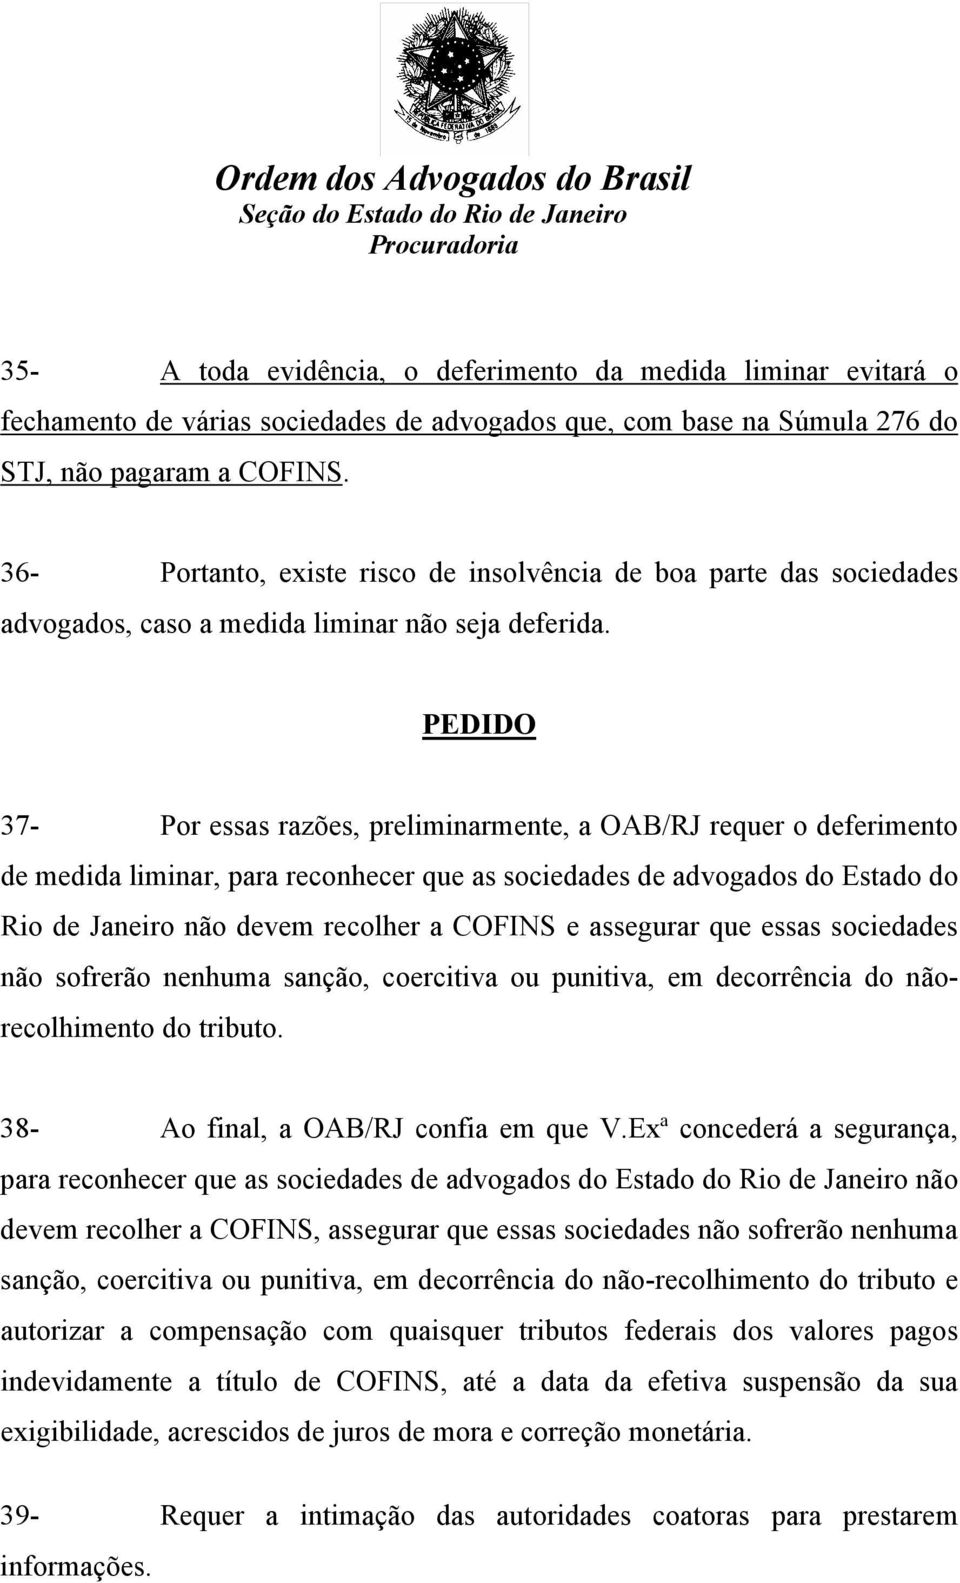 PEDIDO 37- Por essas razões, preliminarmente, a OAB/RJ requer o deferimento de medida liminar, para reconhecer que as sociedades de advogados do Estado do Rio de Janeiro não devem recolher a COFINS e